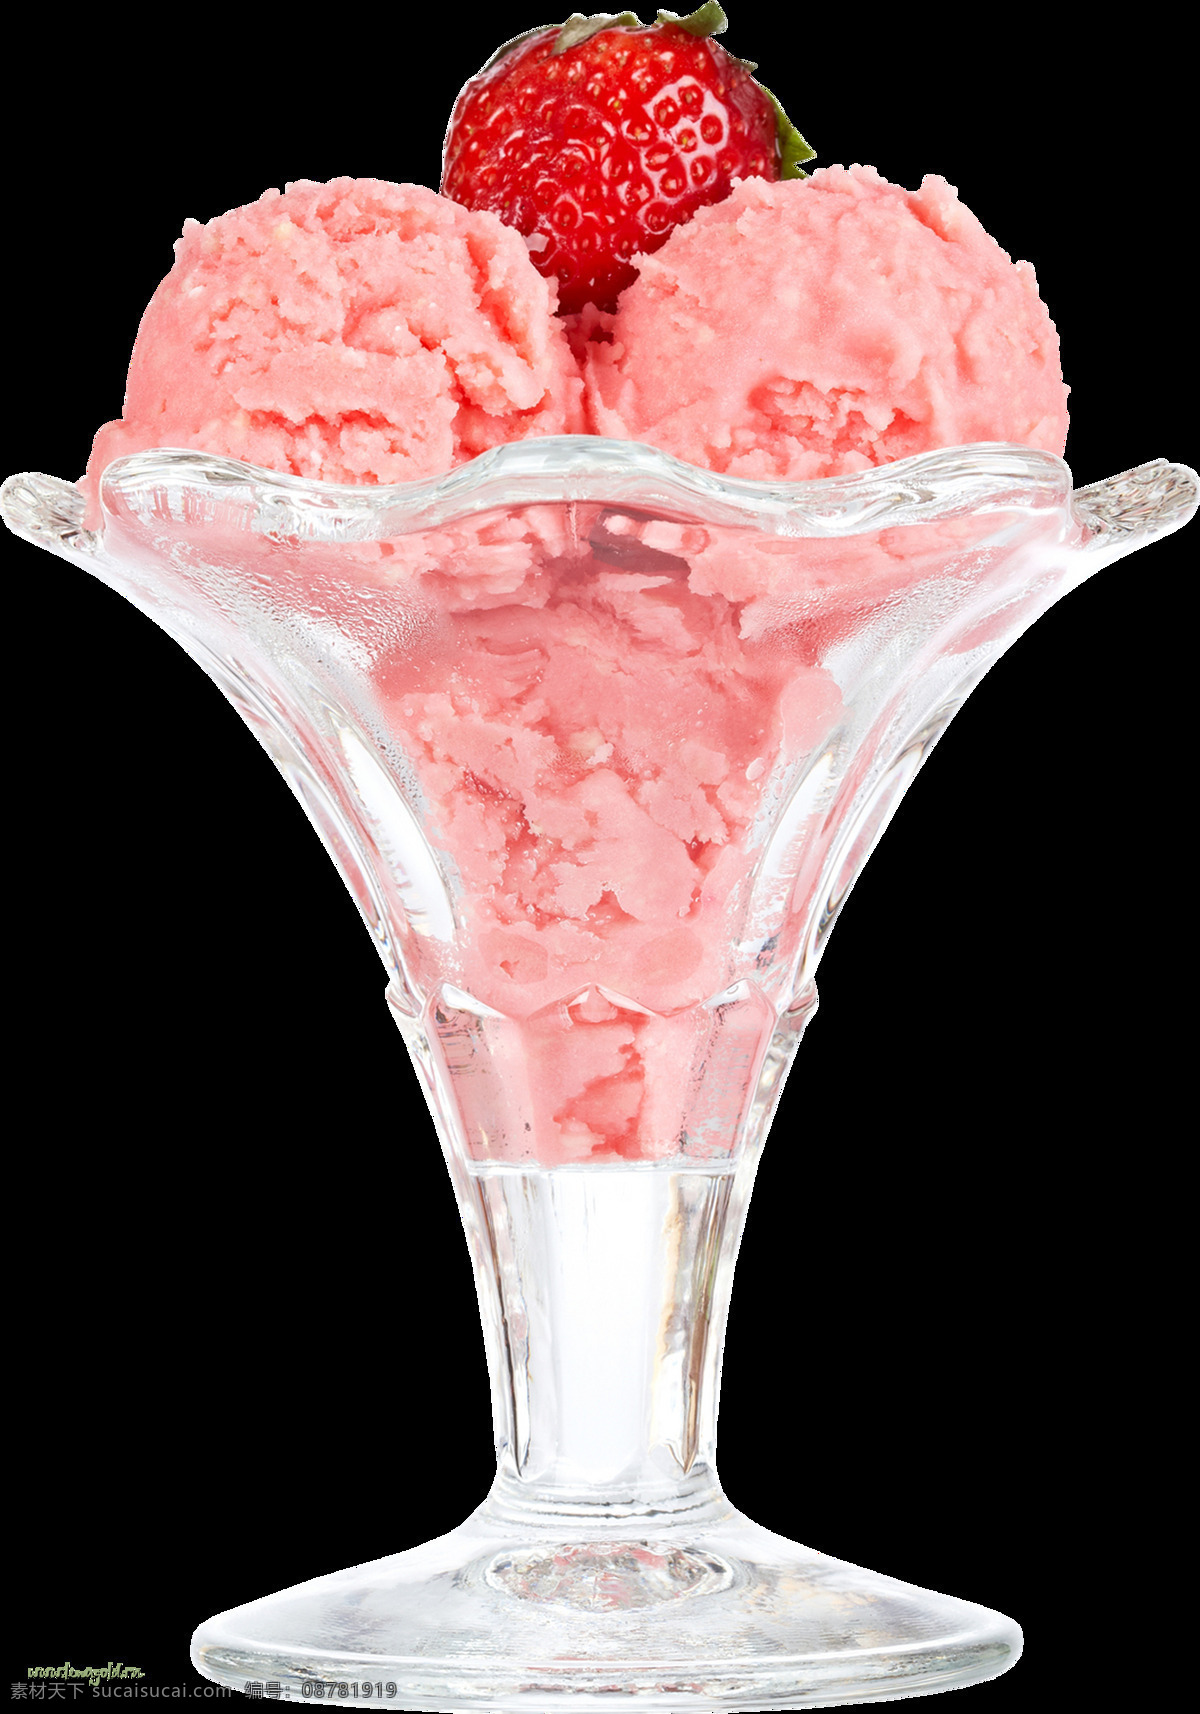 红色 草莓 冰淇淋 免 抠 透明 图 层 冰激凌素材 夏季海报元素 巧克力冰淇淋 夏季 海报 奶油冰淇淋 冰淇淋广告 冰激凌图片 冰淇淋图片 冷饮广告素材 广告